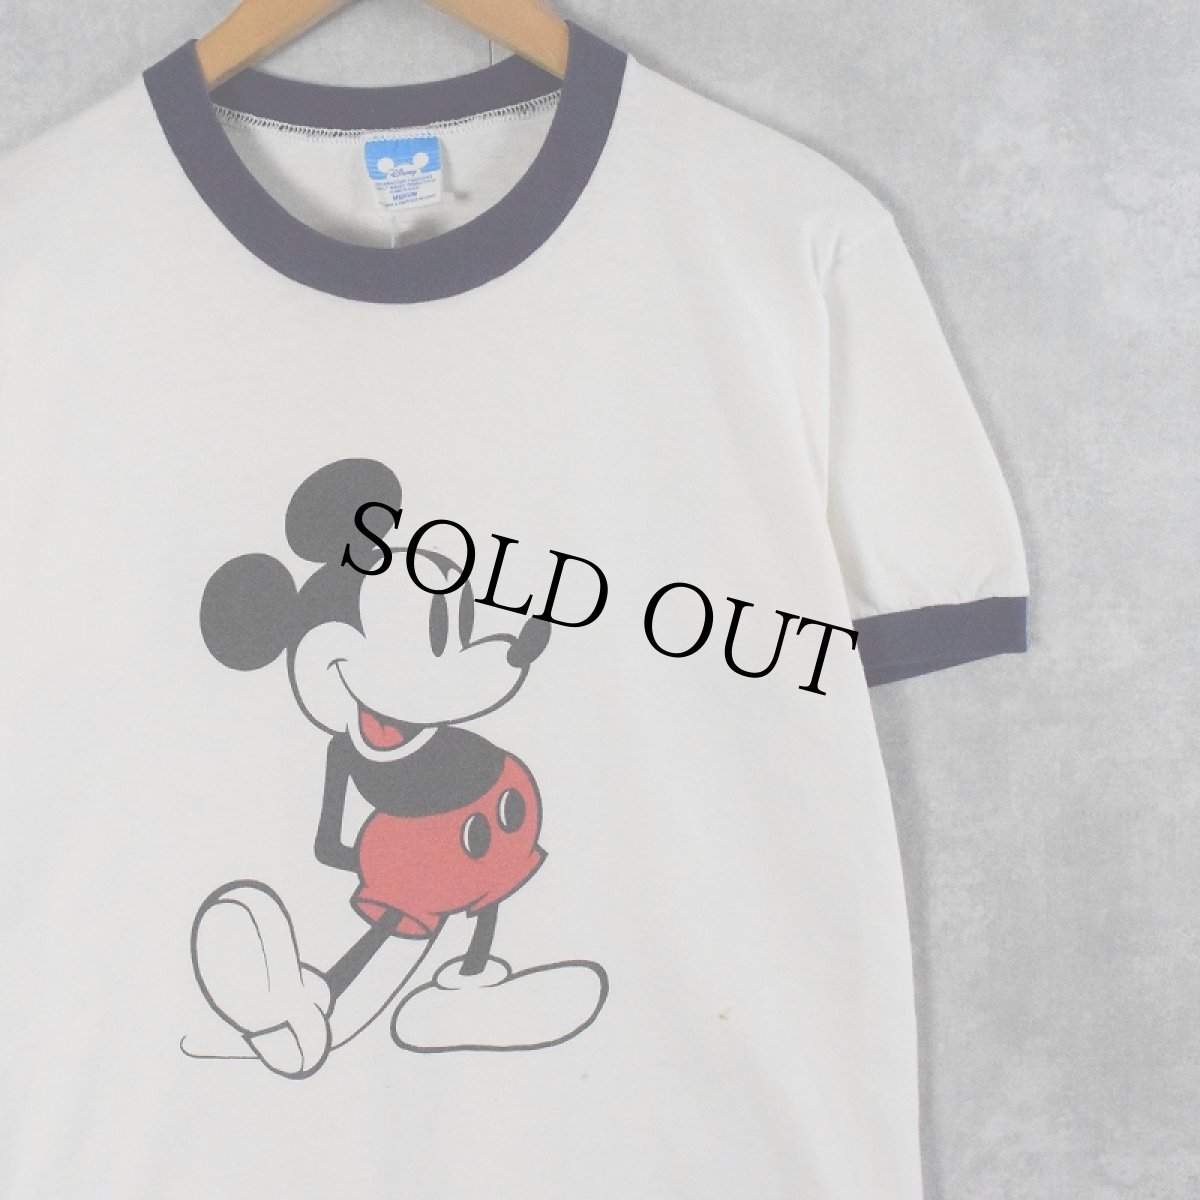 画像1: 80〜90's Disney MICKEY MOUSE USA製 キャラクタープリントリンガーTシャツ M (1)